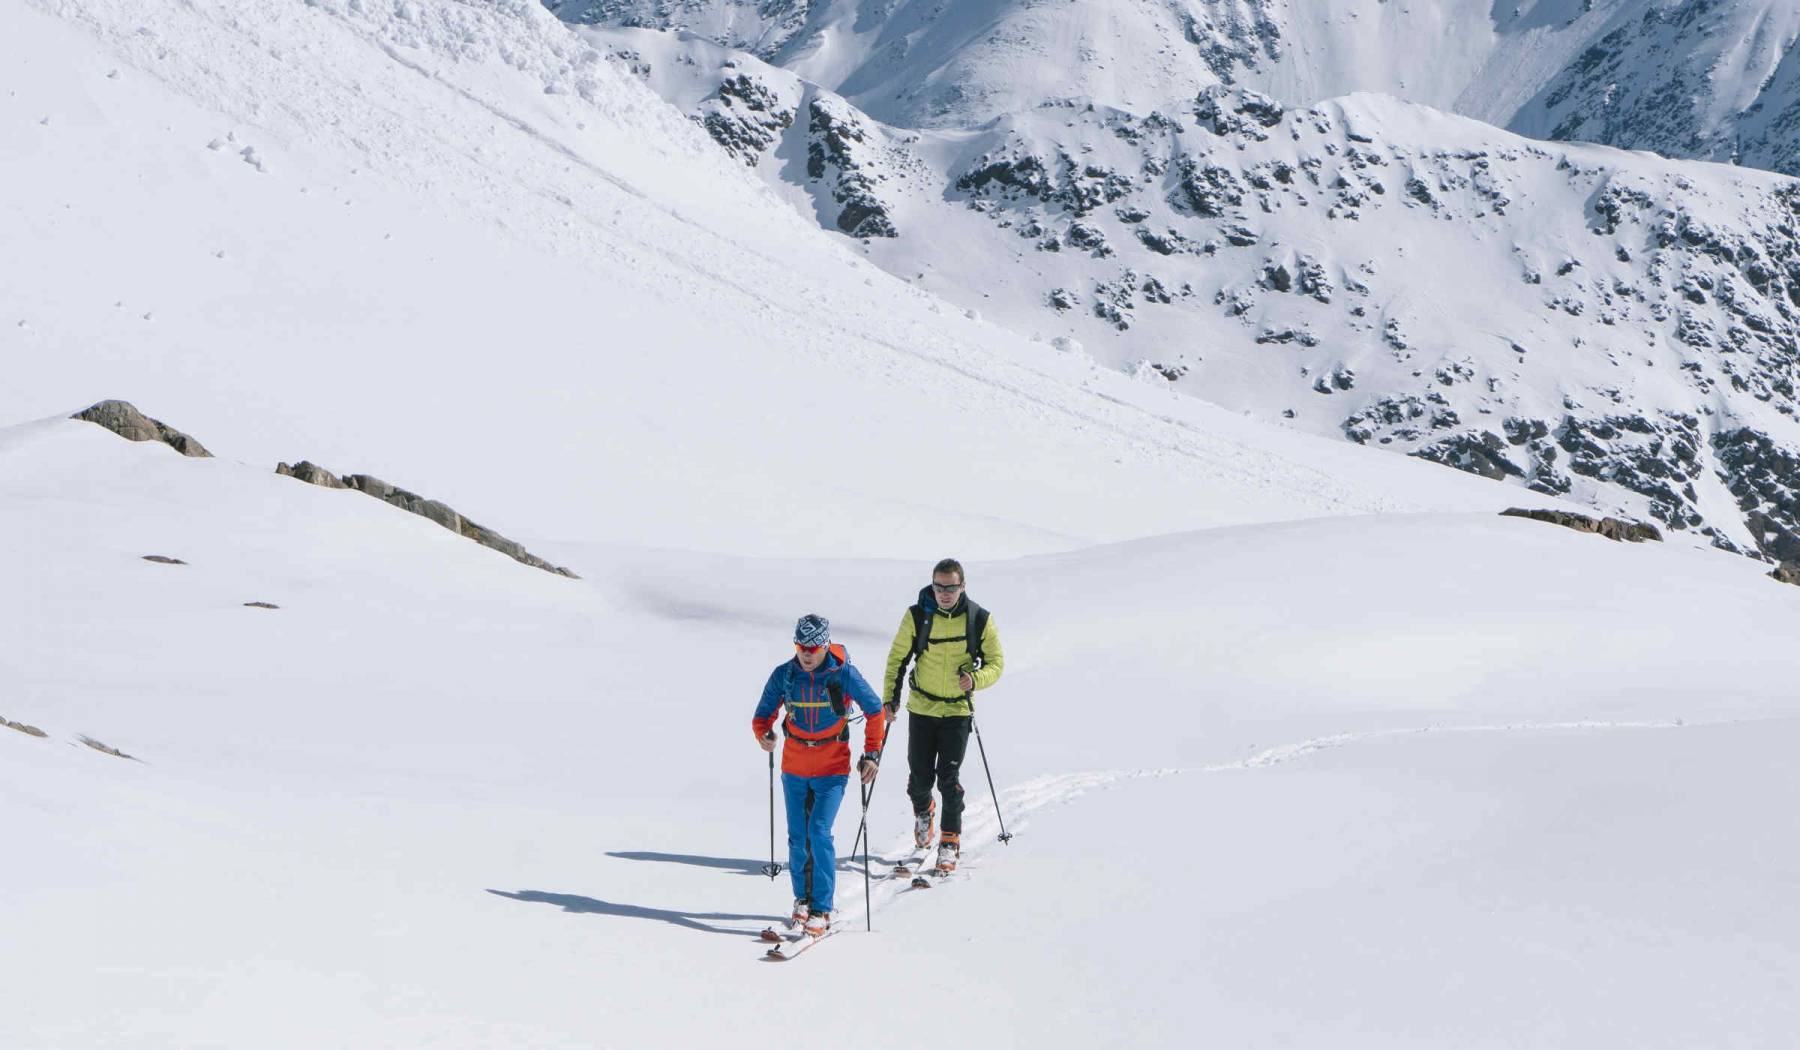 Rund um das Pitztaler Gletschergebiet öffnen sich grenzenlose Weiten für Skitourengeher